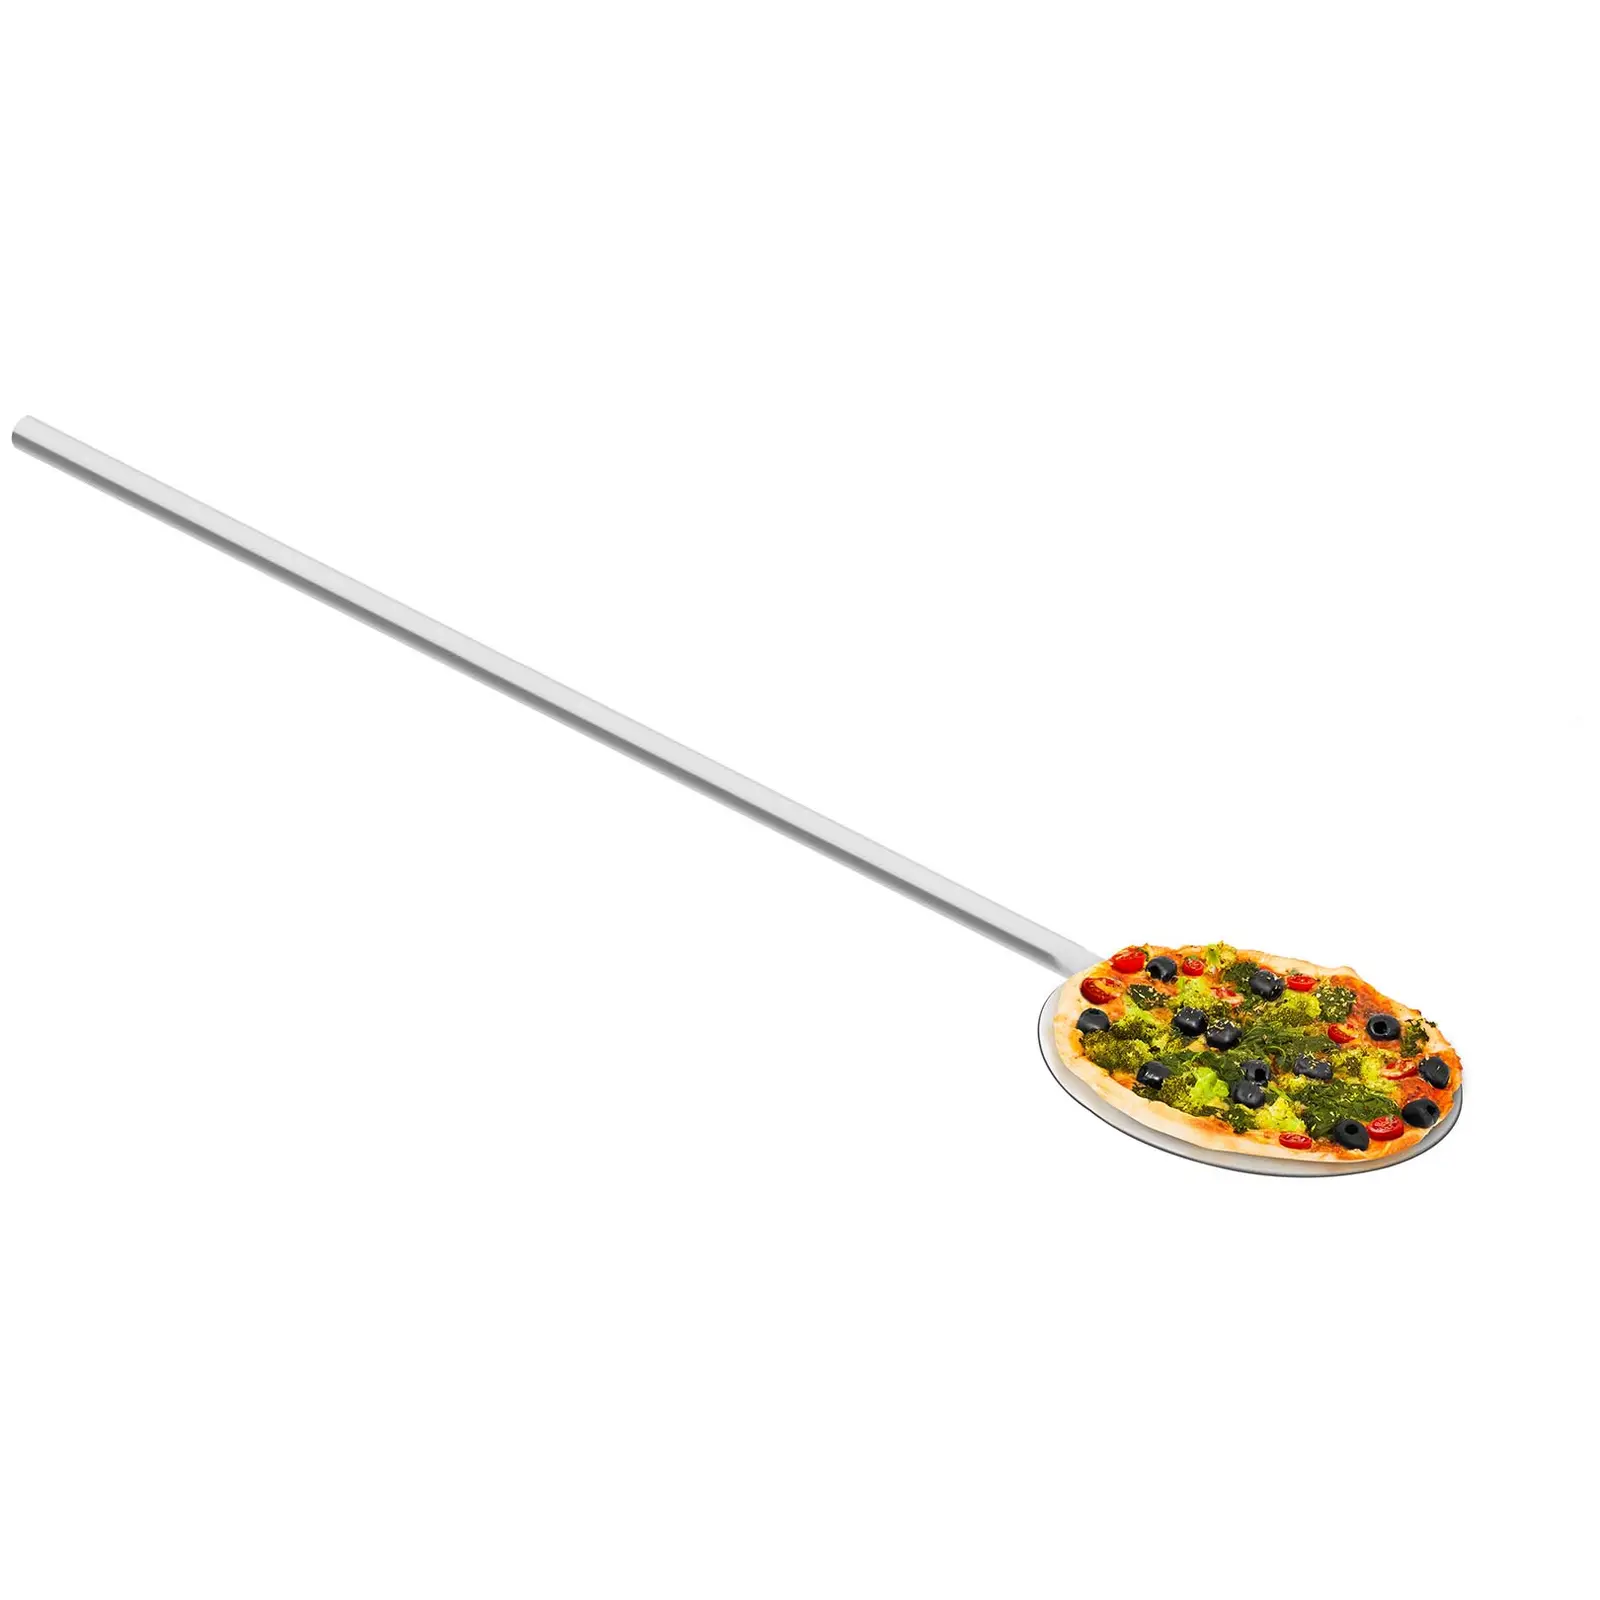 Pizza shovel -100 cm long - 20 cm wide